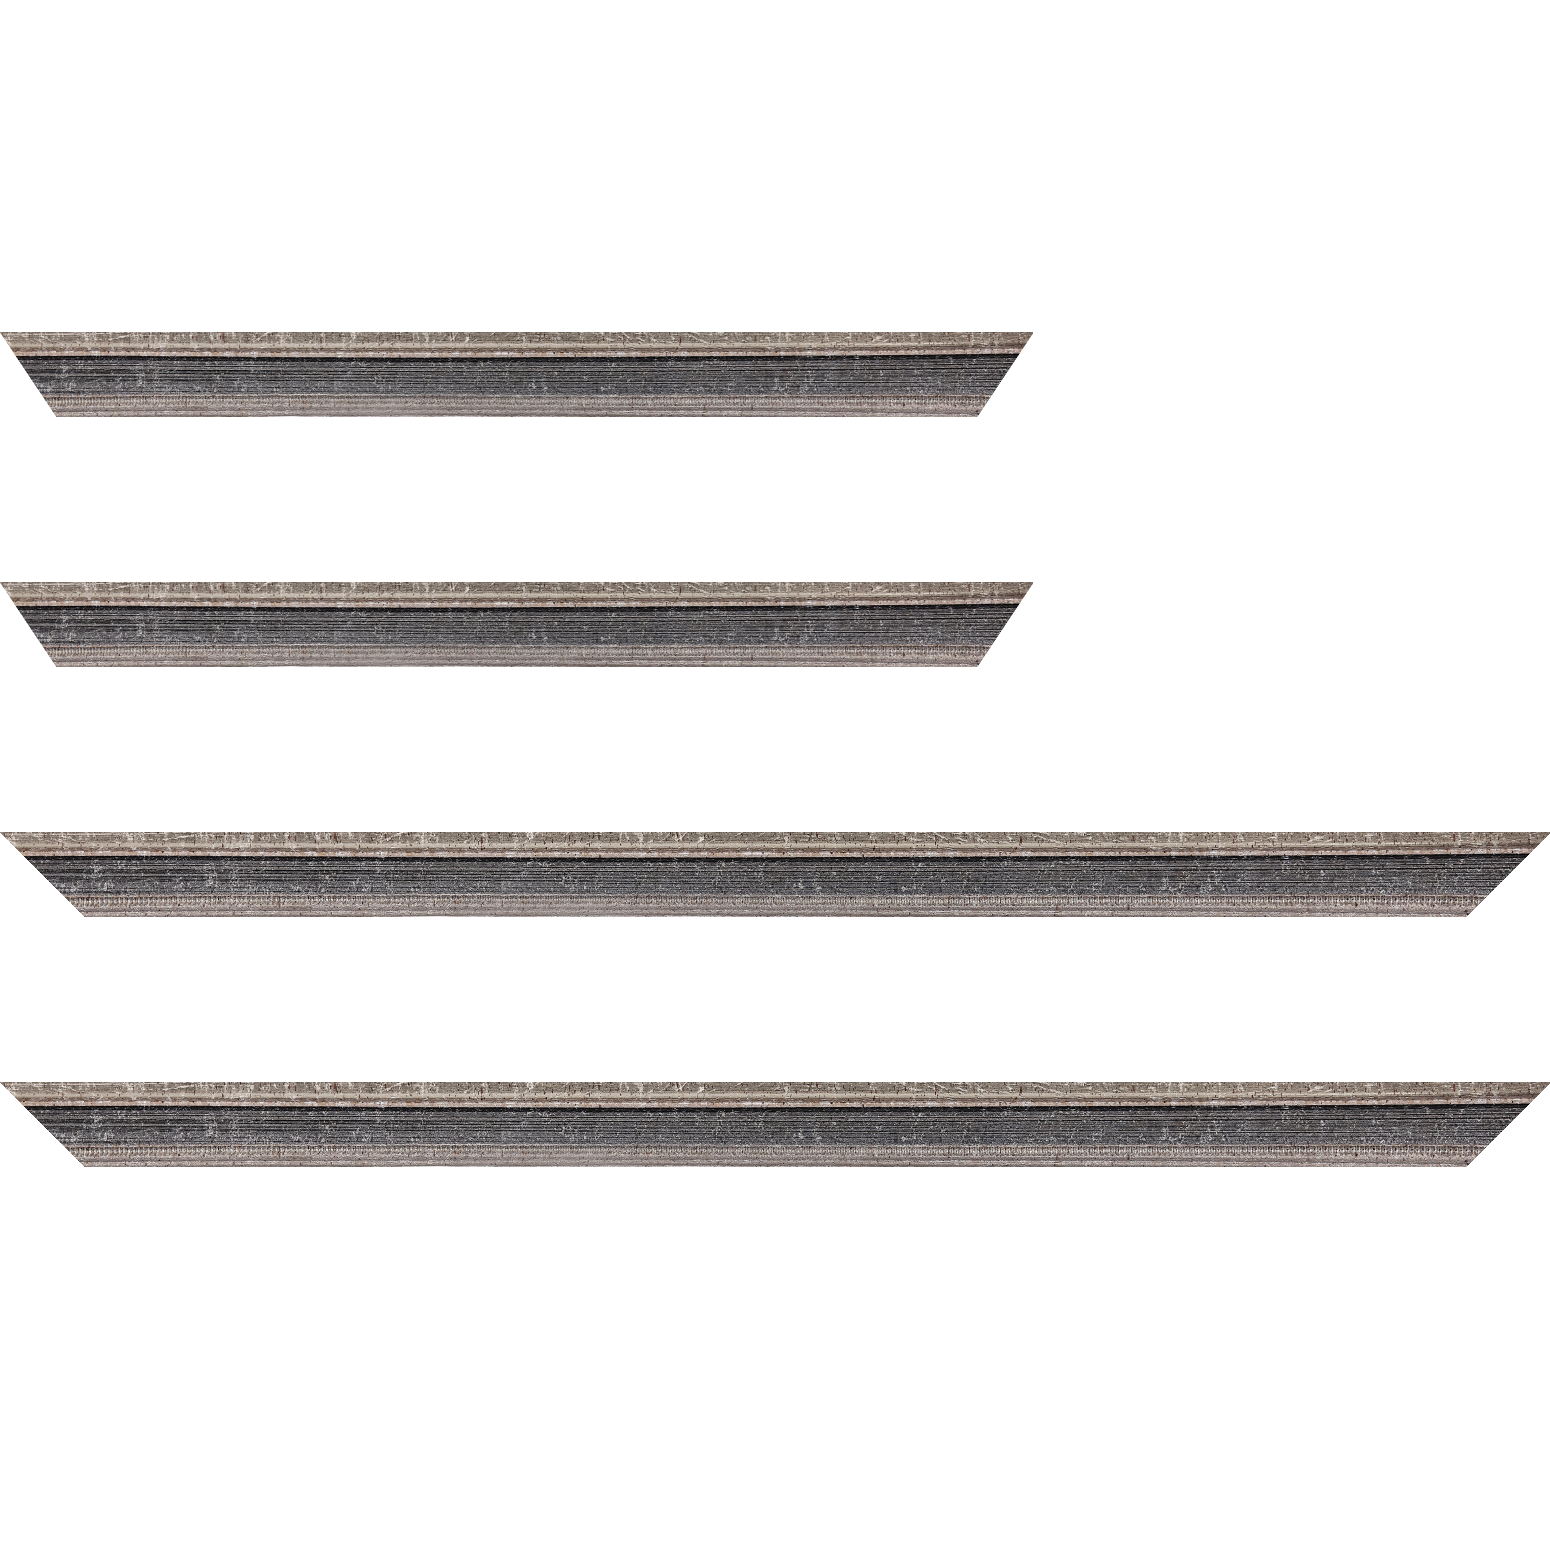 Baguette bois profil incurvé largeur 2.4cm argent antique gorge gris noirci vieilli filet perle argent - 59.4x84.1